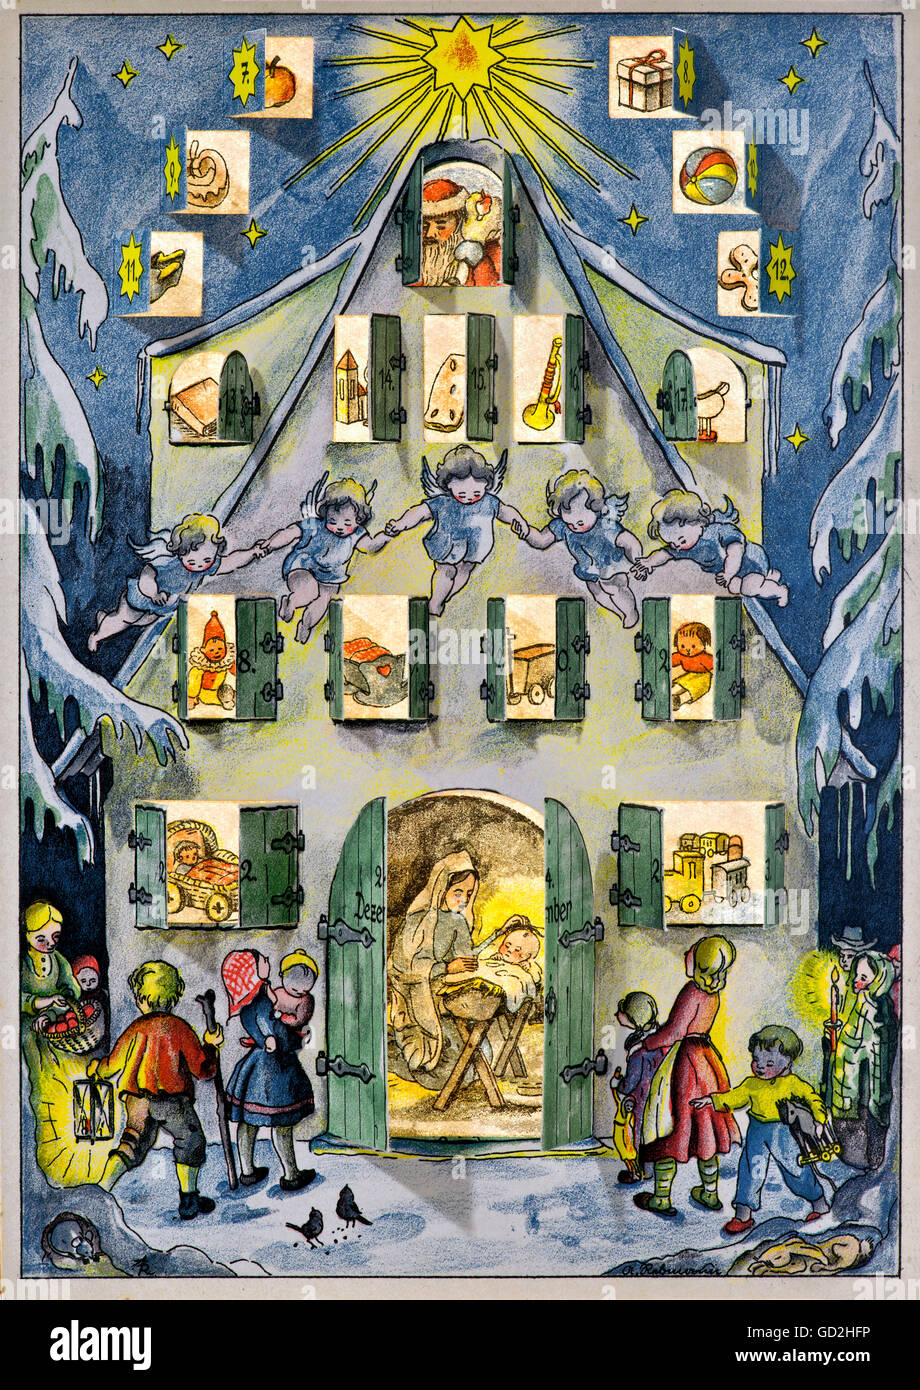 Noël, saison de l'Avent, calendrier de l'Avent, maison enneigée, Allemagne,  vers 1949, droits additionnels-Clearences-non disponible Photo Stock - Alamy